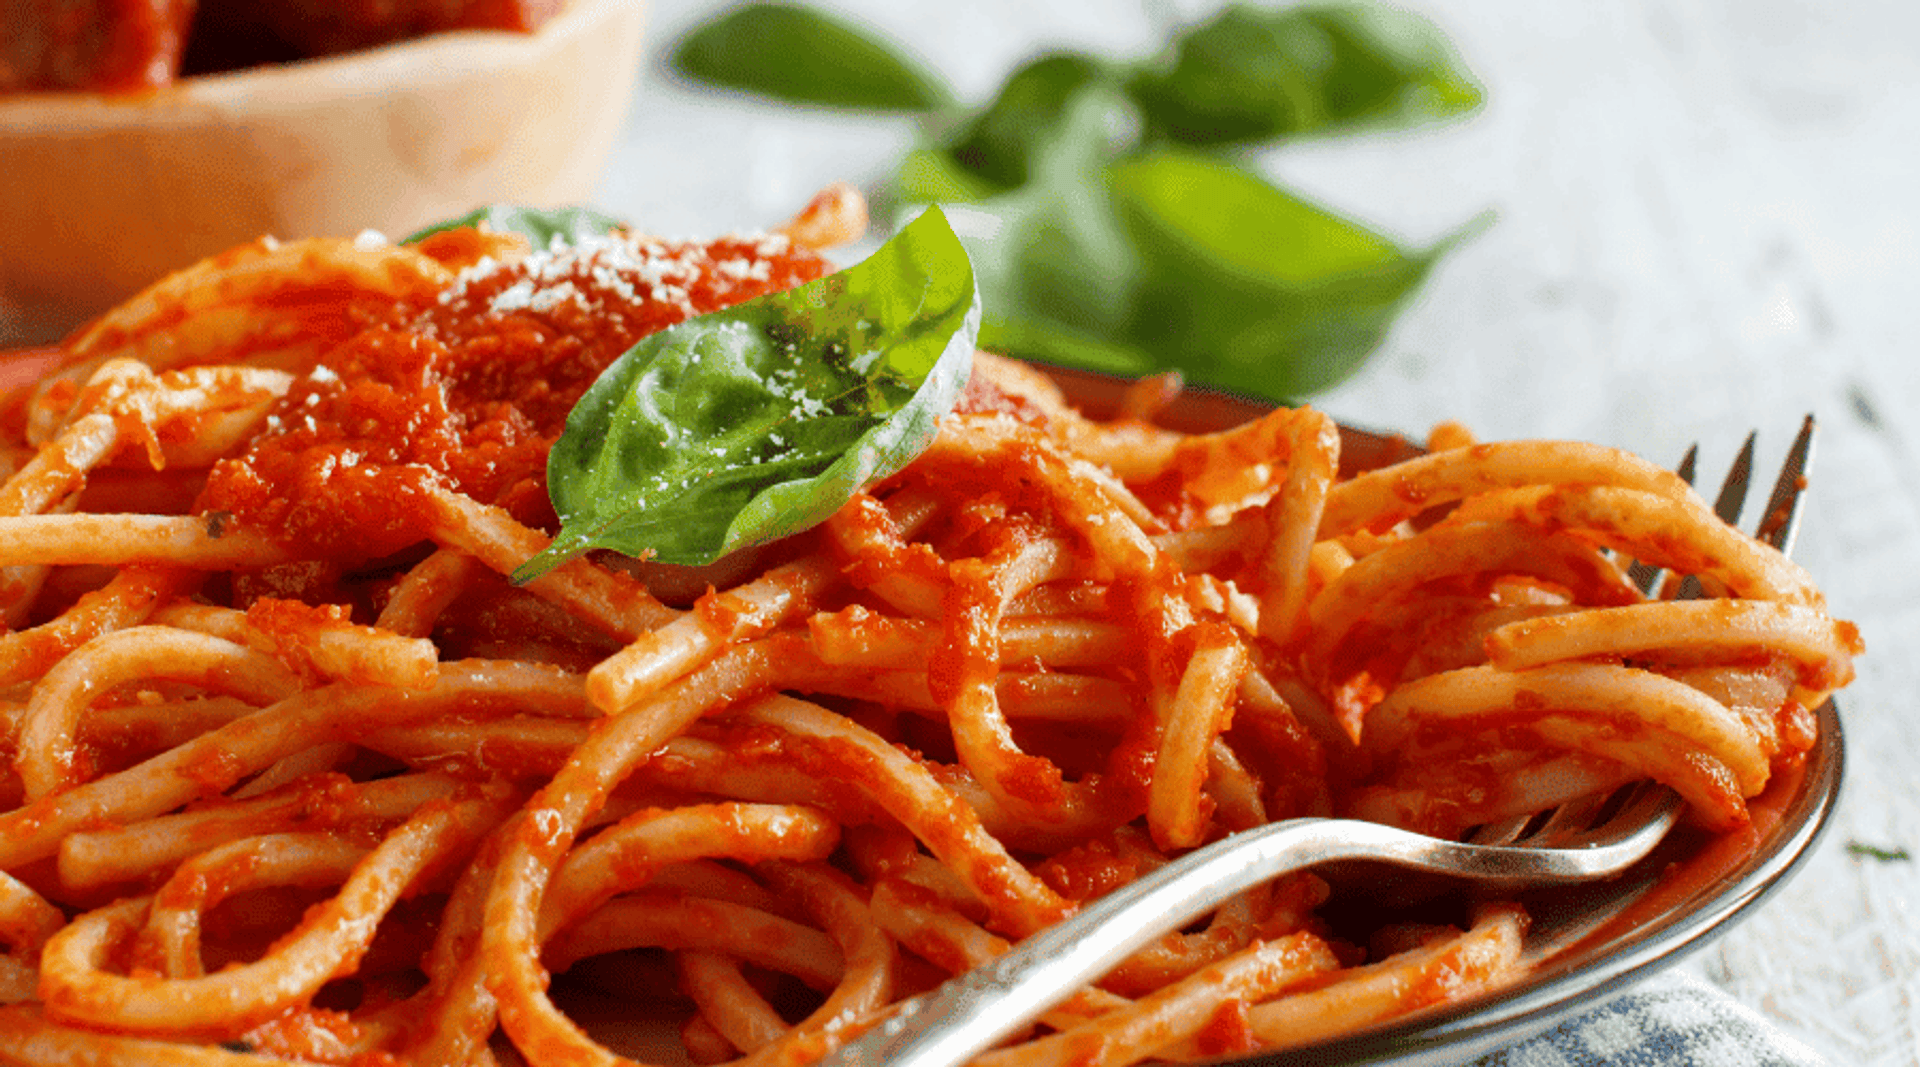 Najlepszy sposób na włoski sos pomidorowy do makaronu. Pokocha go cała rodzina